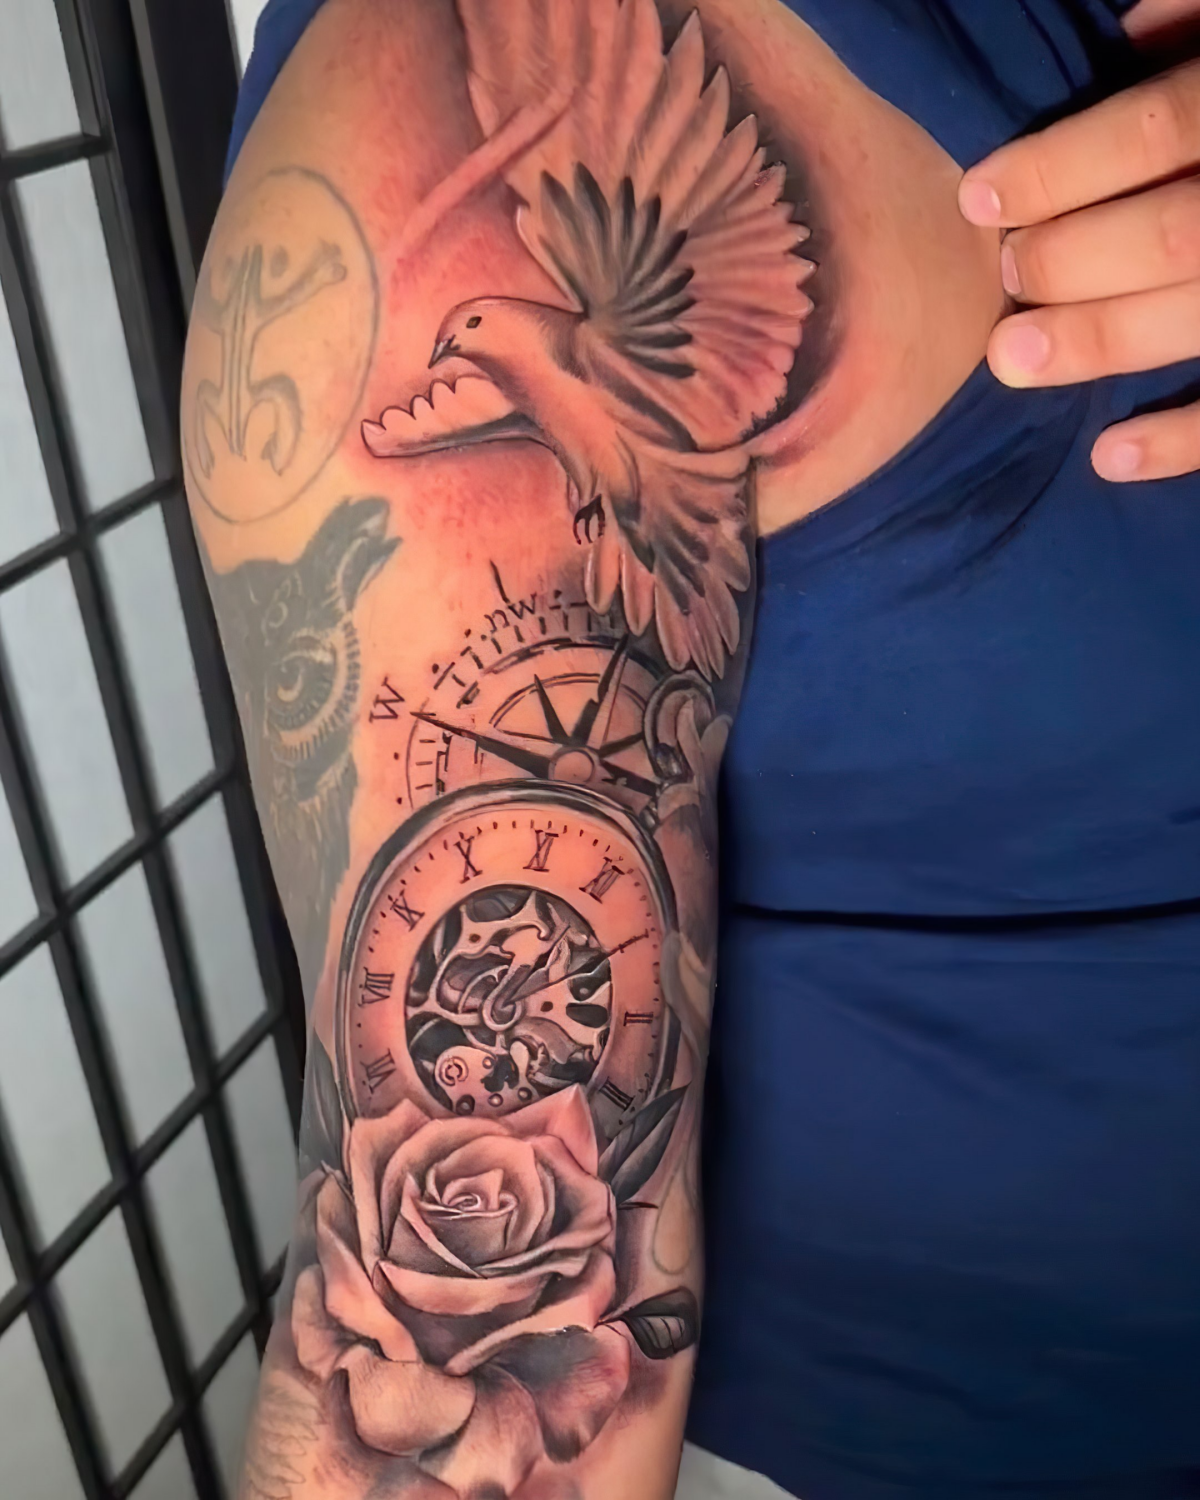 inkfusion tattoo studio tattoo uhr des lebens mit rose und tauben